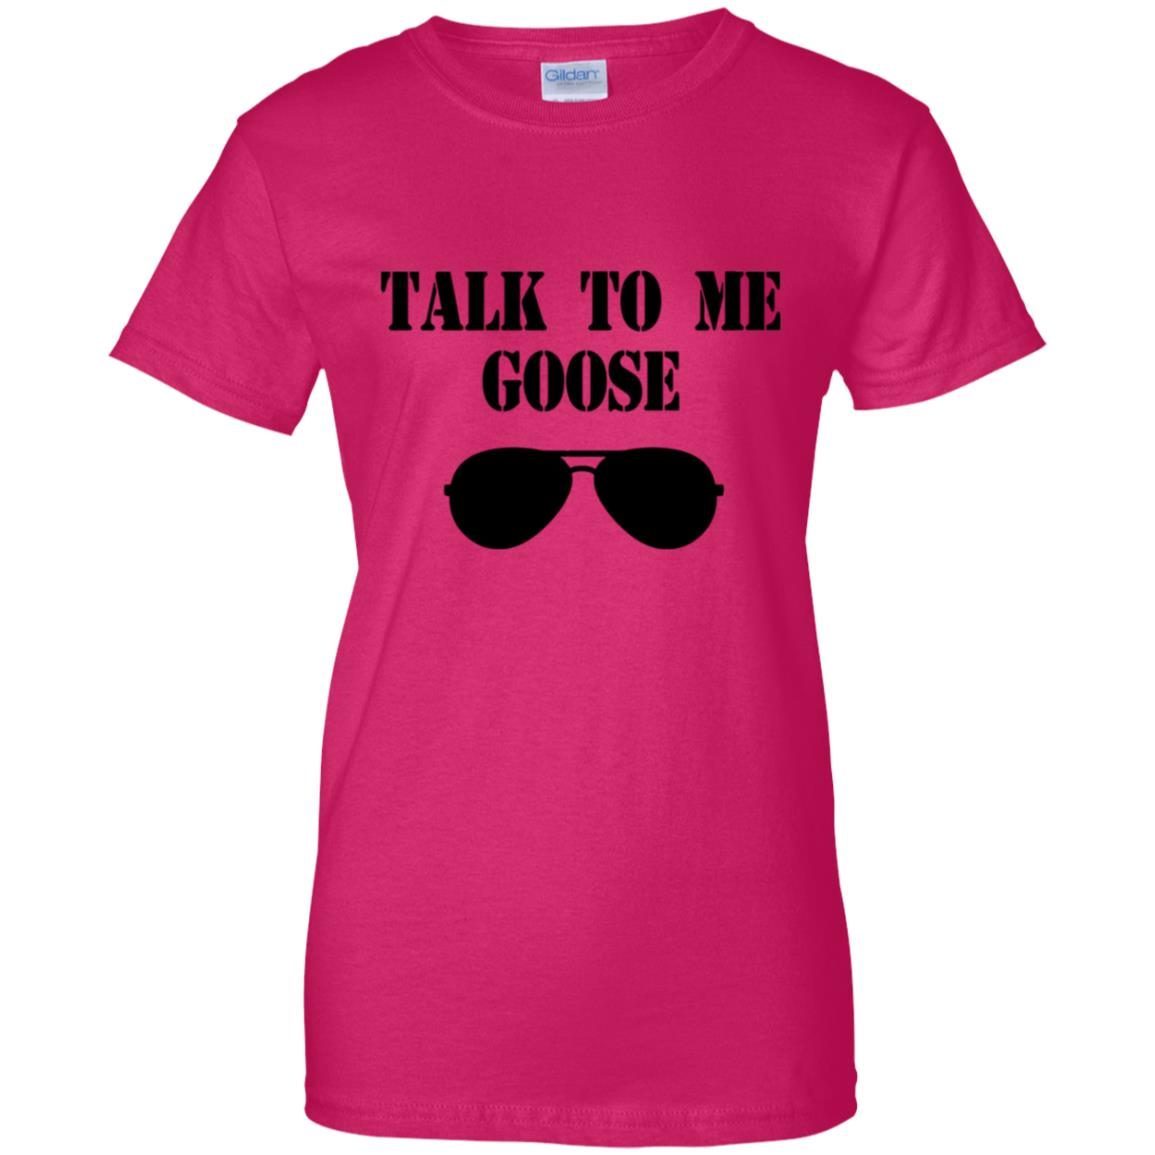 Talk To Me Goose shirt